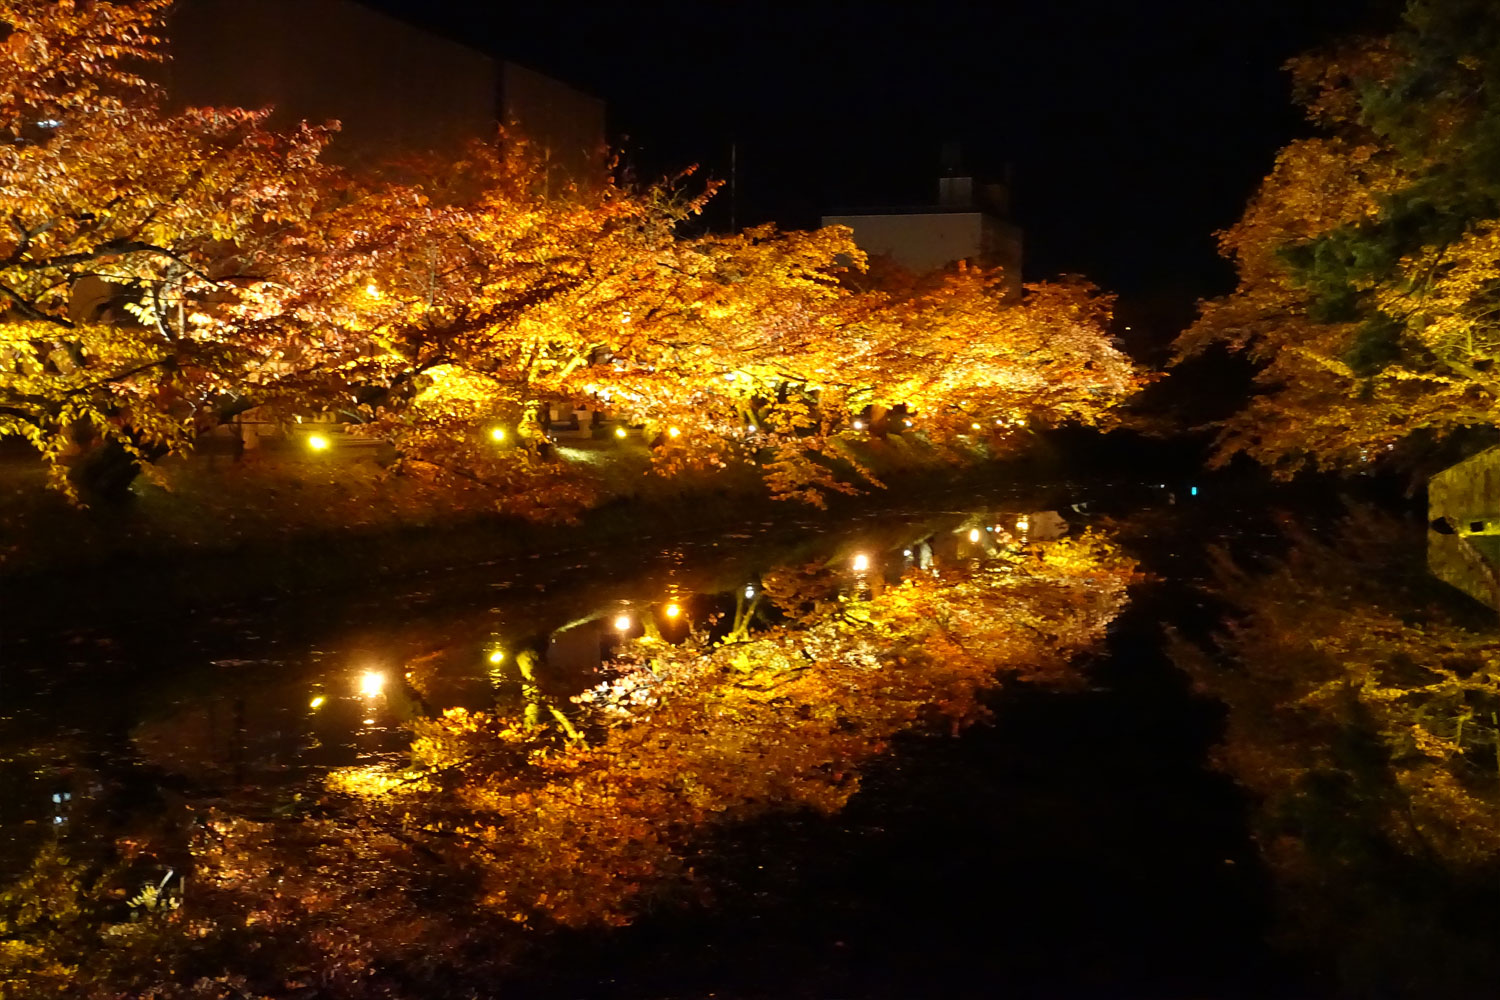 弘前公園 弘前城菊と紅葉まつり